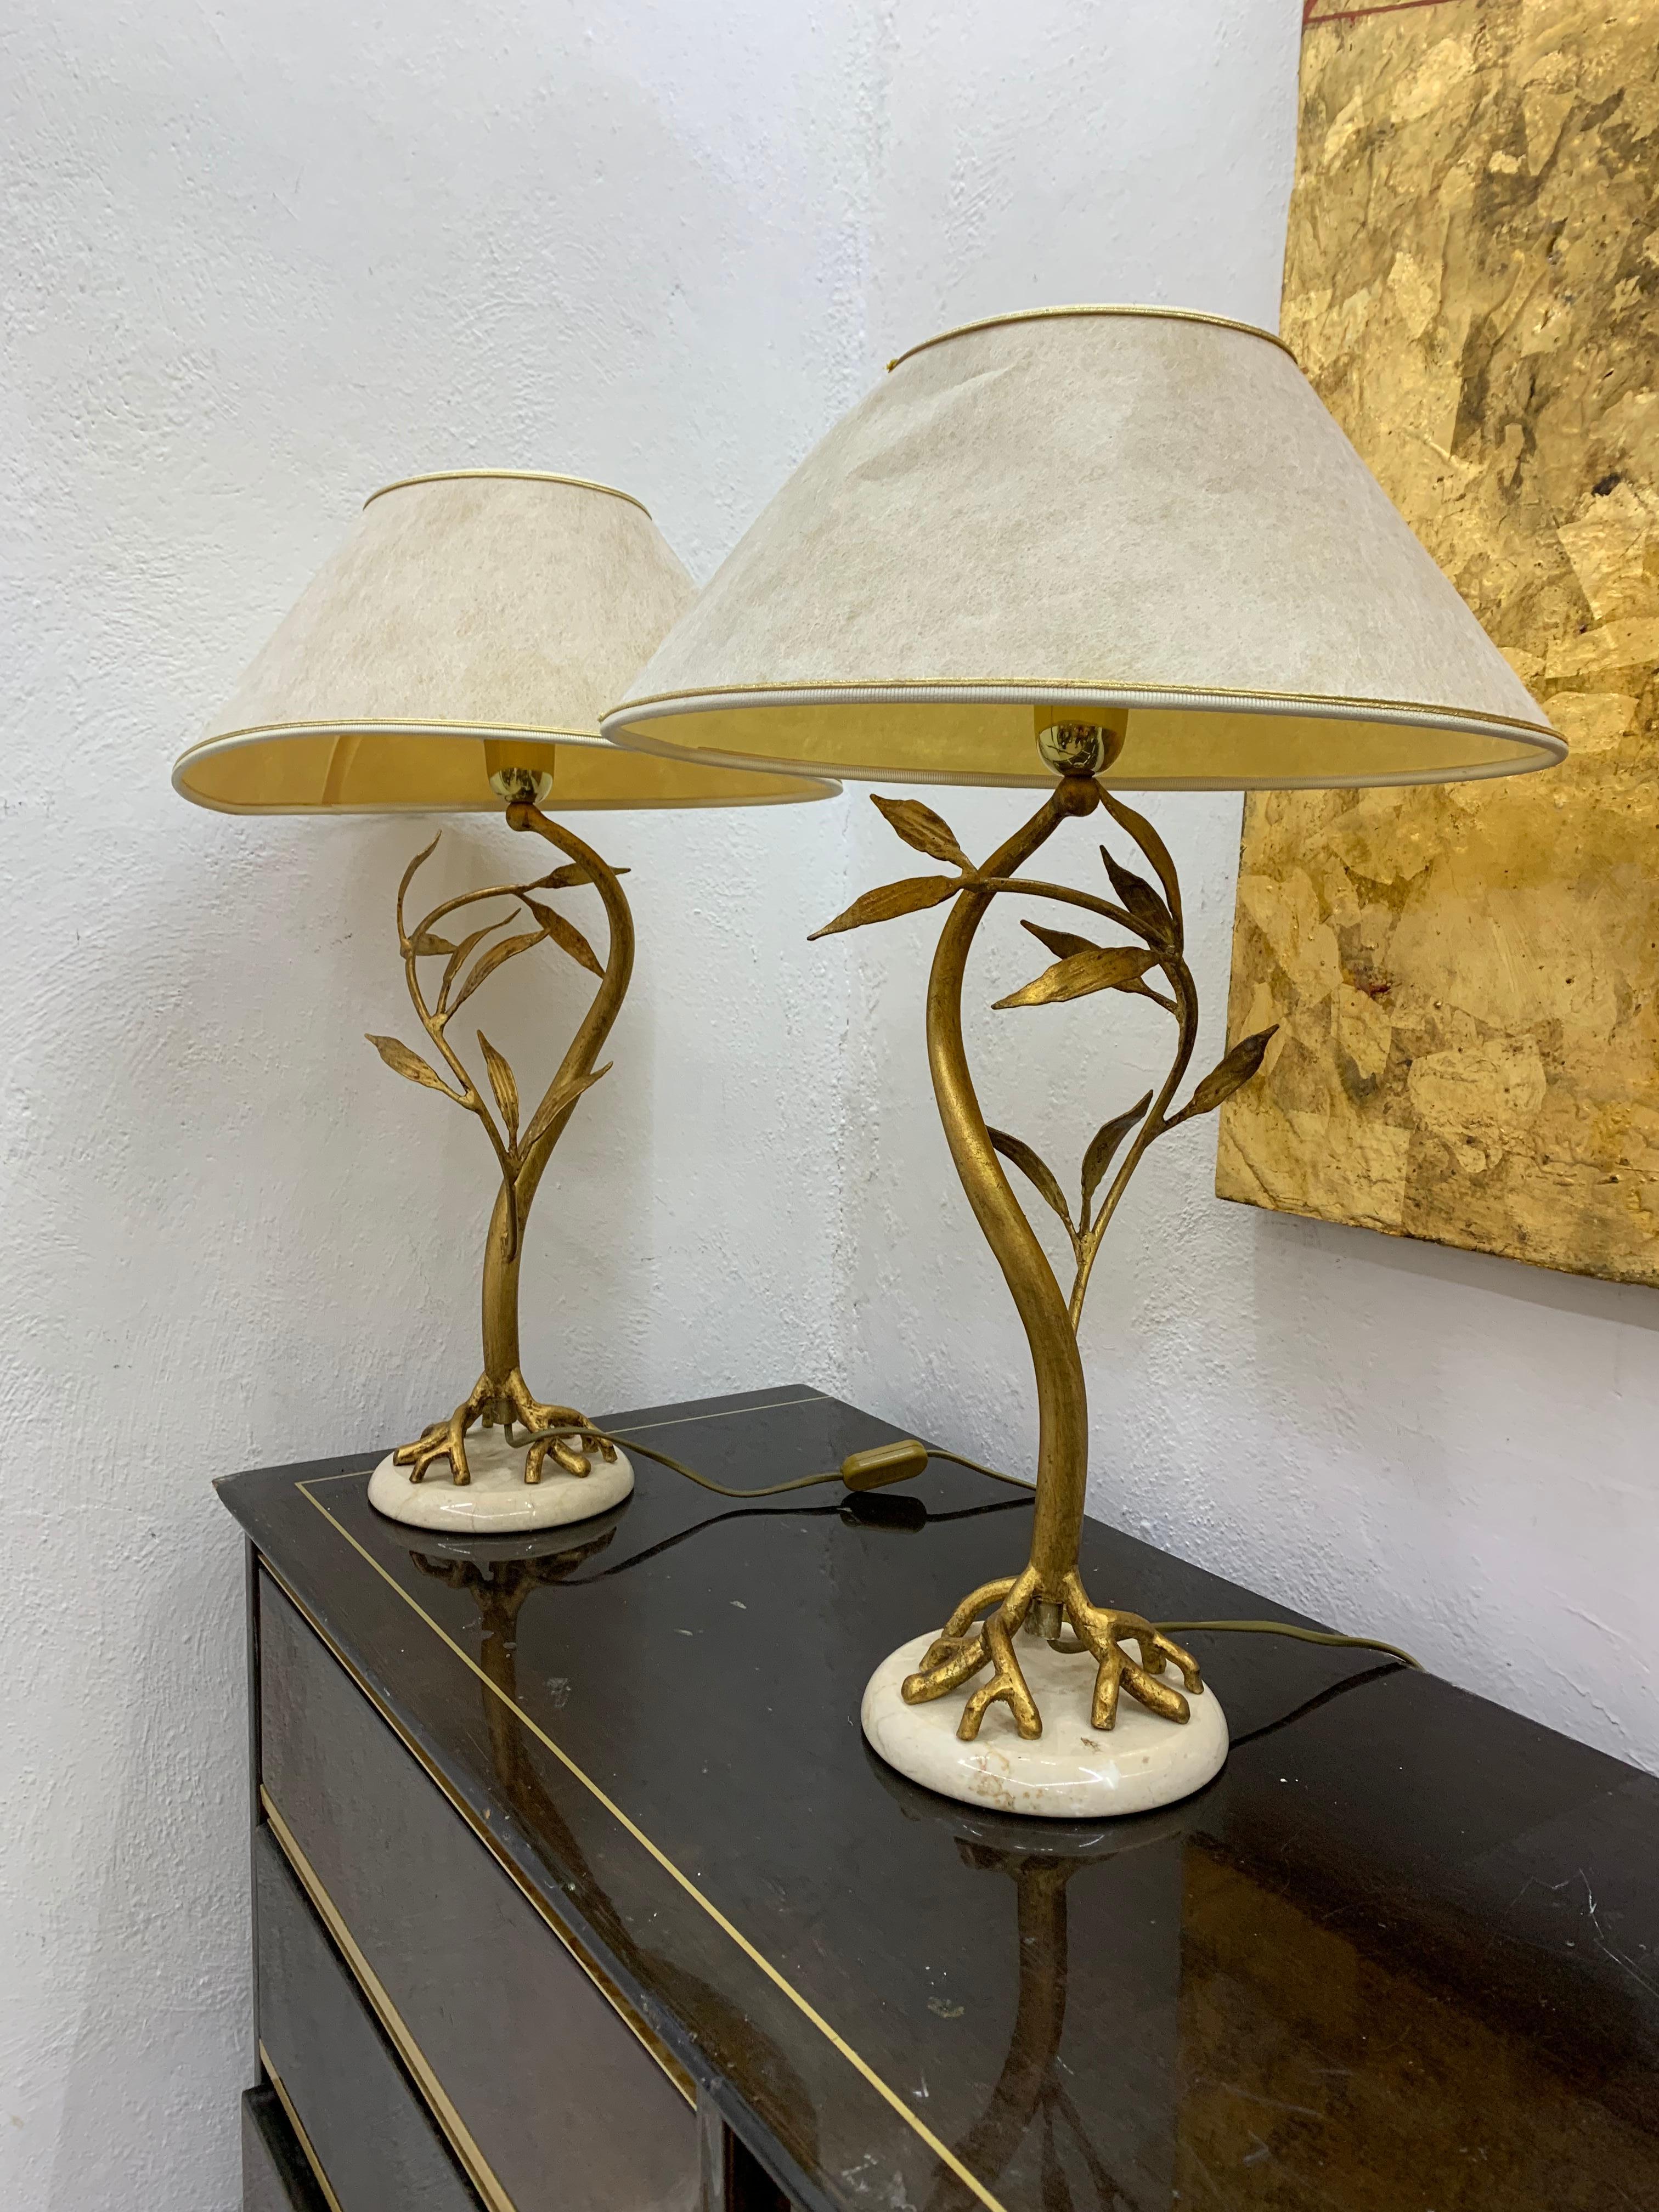 Magnifique paire de lampes de table sculpturales en bronze doré et marbre, attribuée au Design Jacques/One Brasseur, France, années 1970.
Elles sont vendues avec leurs abat-jour d'origine mais ceux-ci ne sont pas dans le meilleur état avec quelques